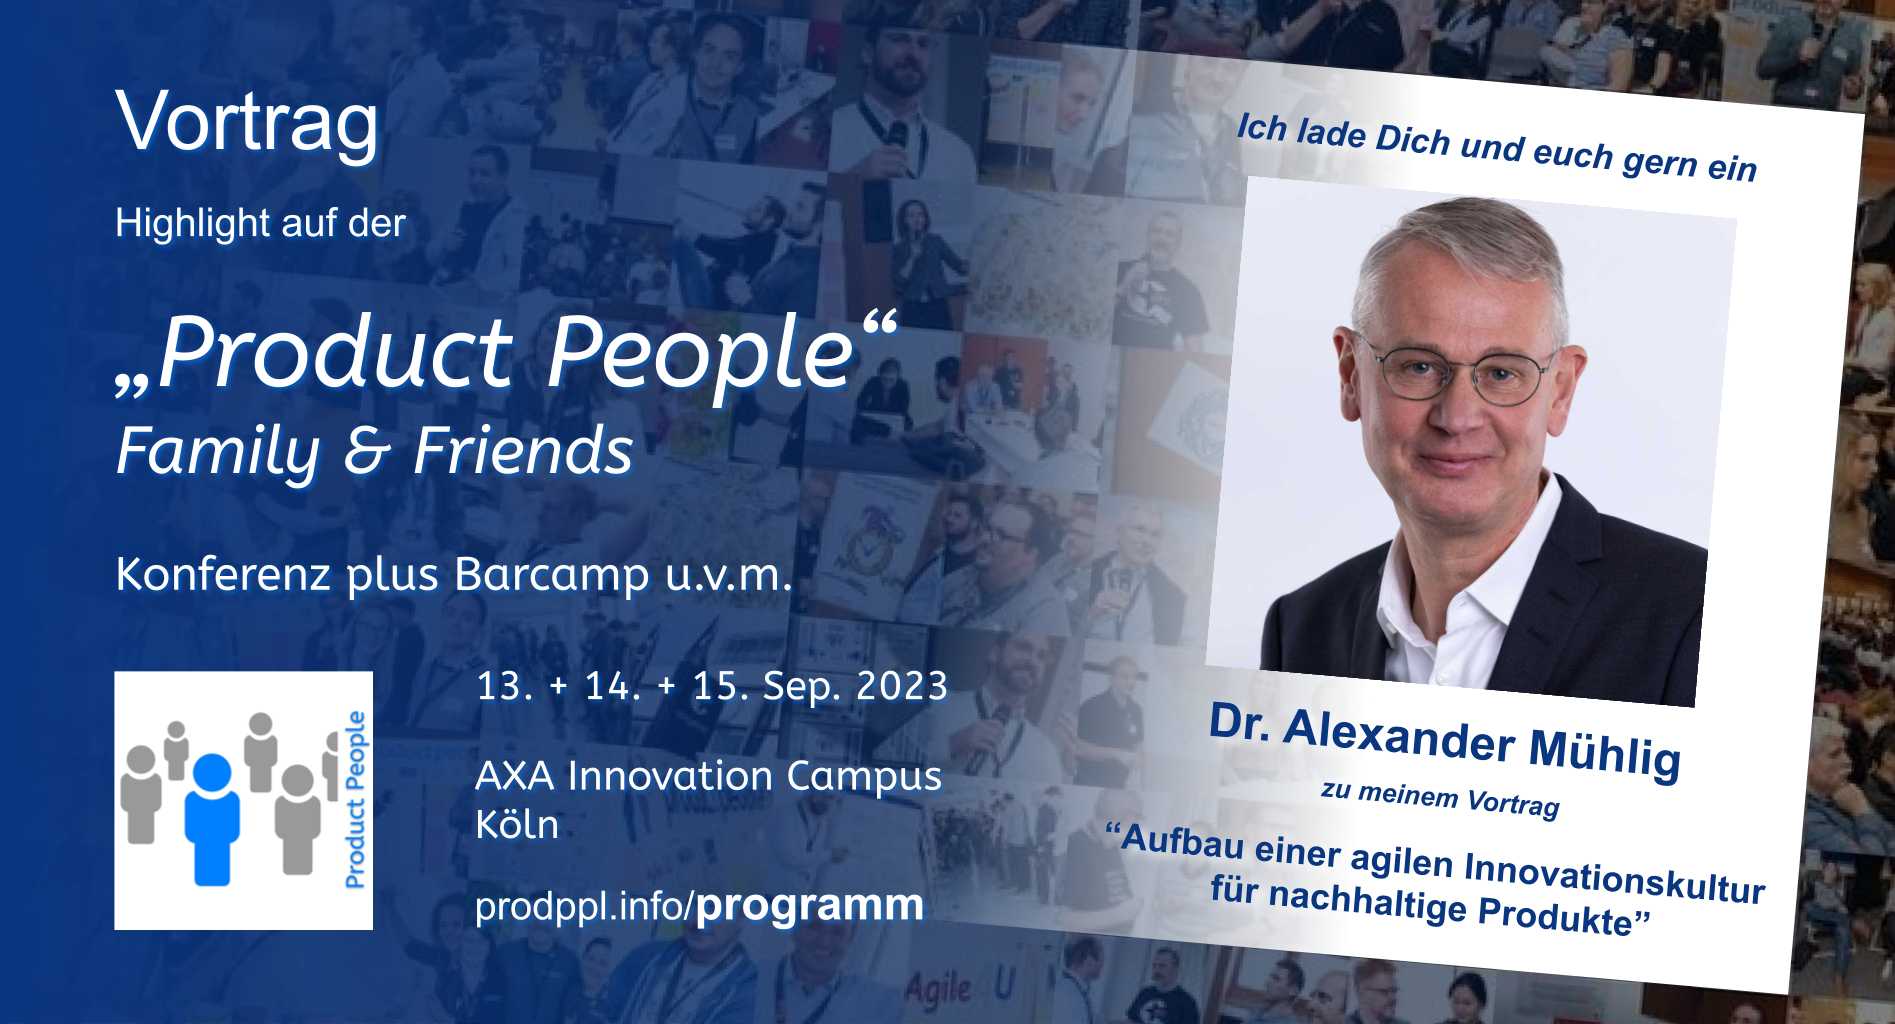 "Aufbau einer agilen Innovationskultur für nachhaltige Produkte" - M-Vortrag von und mit Dr. Alexander Mühlig - auf der 'Product People - Family & Friends' - Konferenz plus Barcamp - Köln 2023